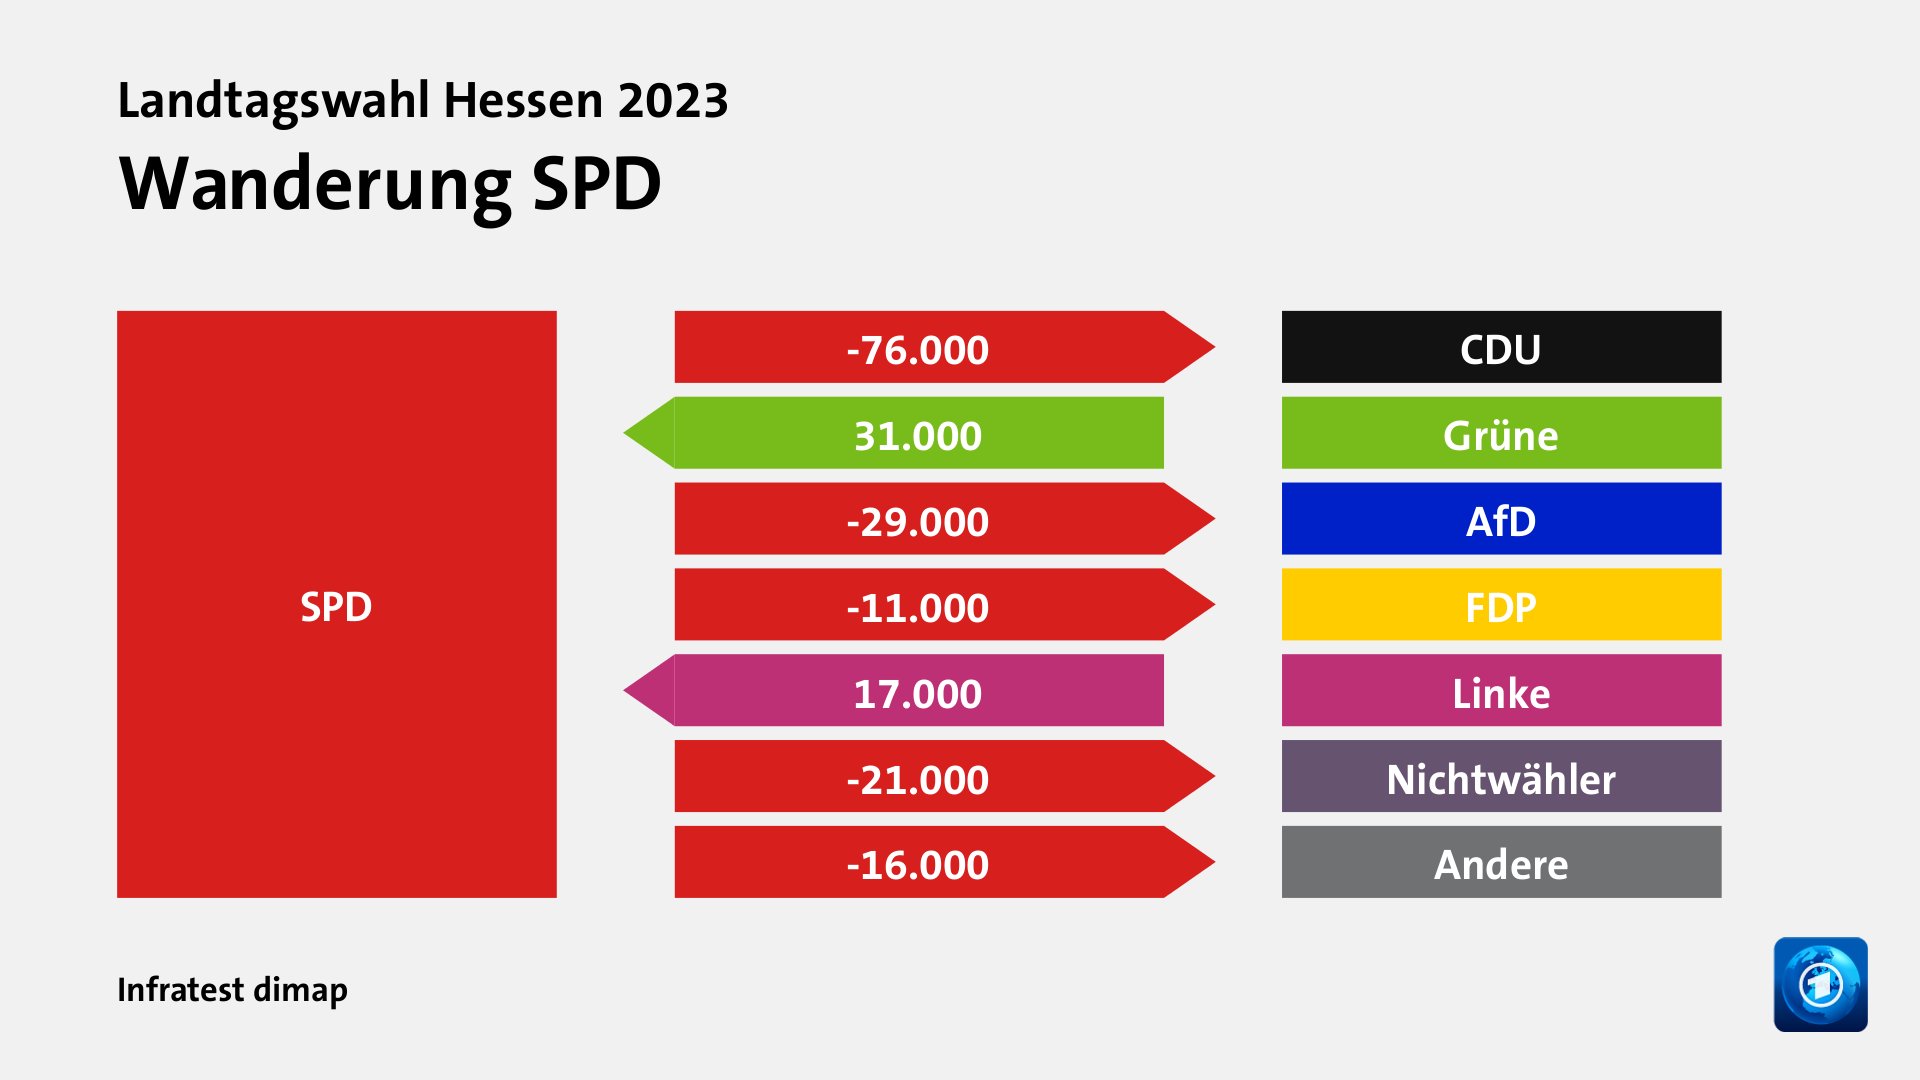 Wanderung SPDzu CDU 76.000 Wähler, von Grüne 31.000 Wähler, zu AfD 29.000 Wähler, zu FDP 11.000 Wähler, von Linke 17.000 Wähler, zu Nichtwähler 21.000 Wähler, zu Andere 16.000 Wähler, Quelle: Infratest dimap